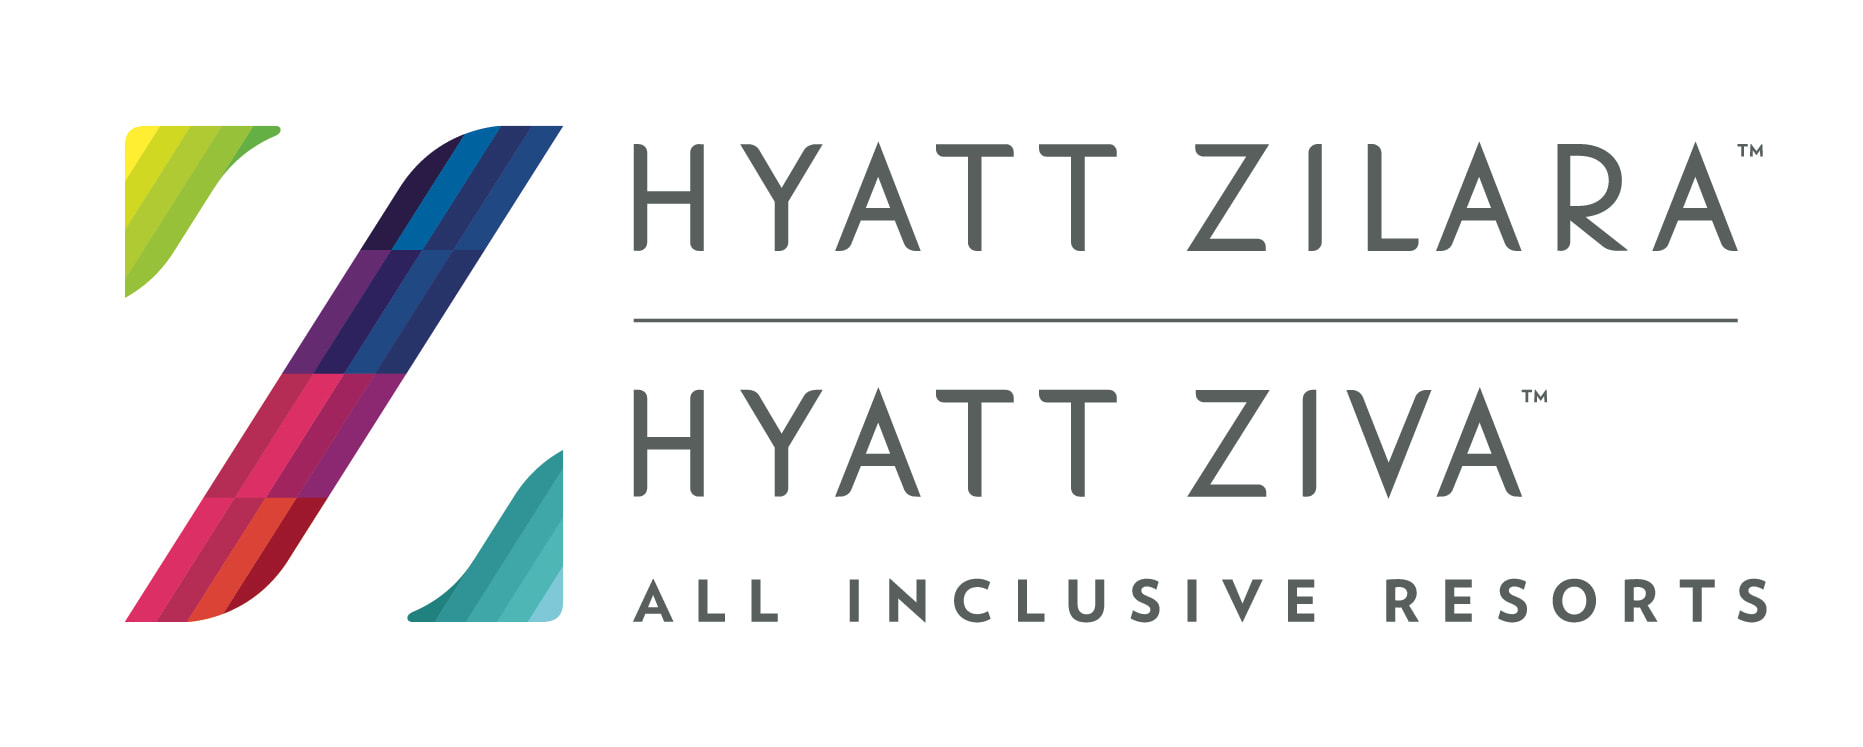 Hyatt Zilara Hyatt Ziva All Inclusive Resorts logo